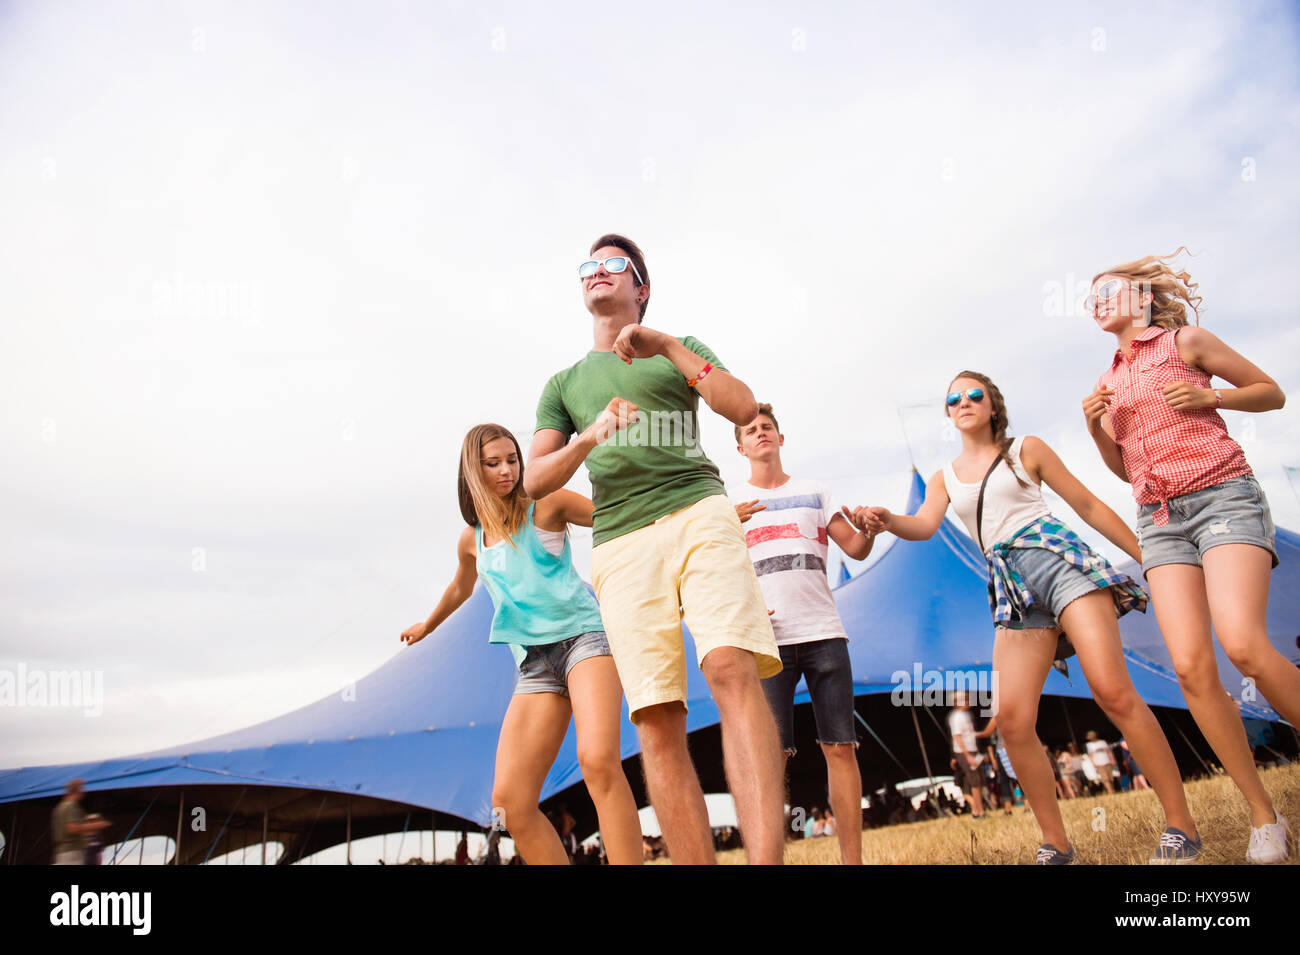 Groupe de jeunes garçons et filles à summer music festival, danse en face de grande tente, journée ensoleillée Banque D'Images